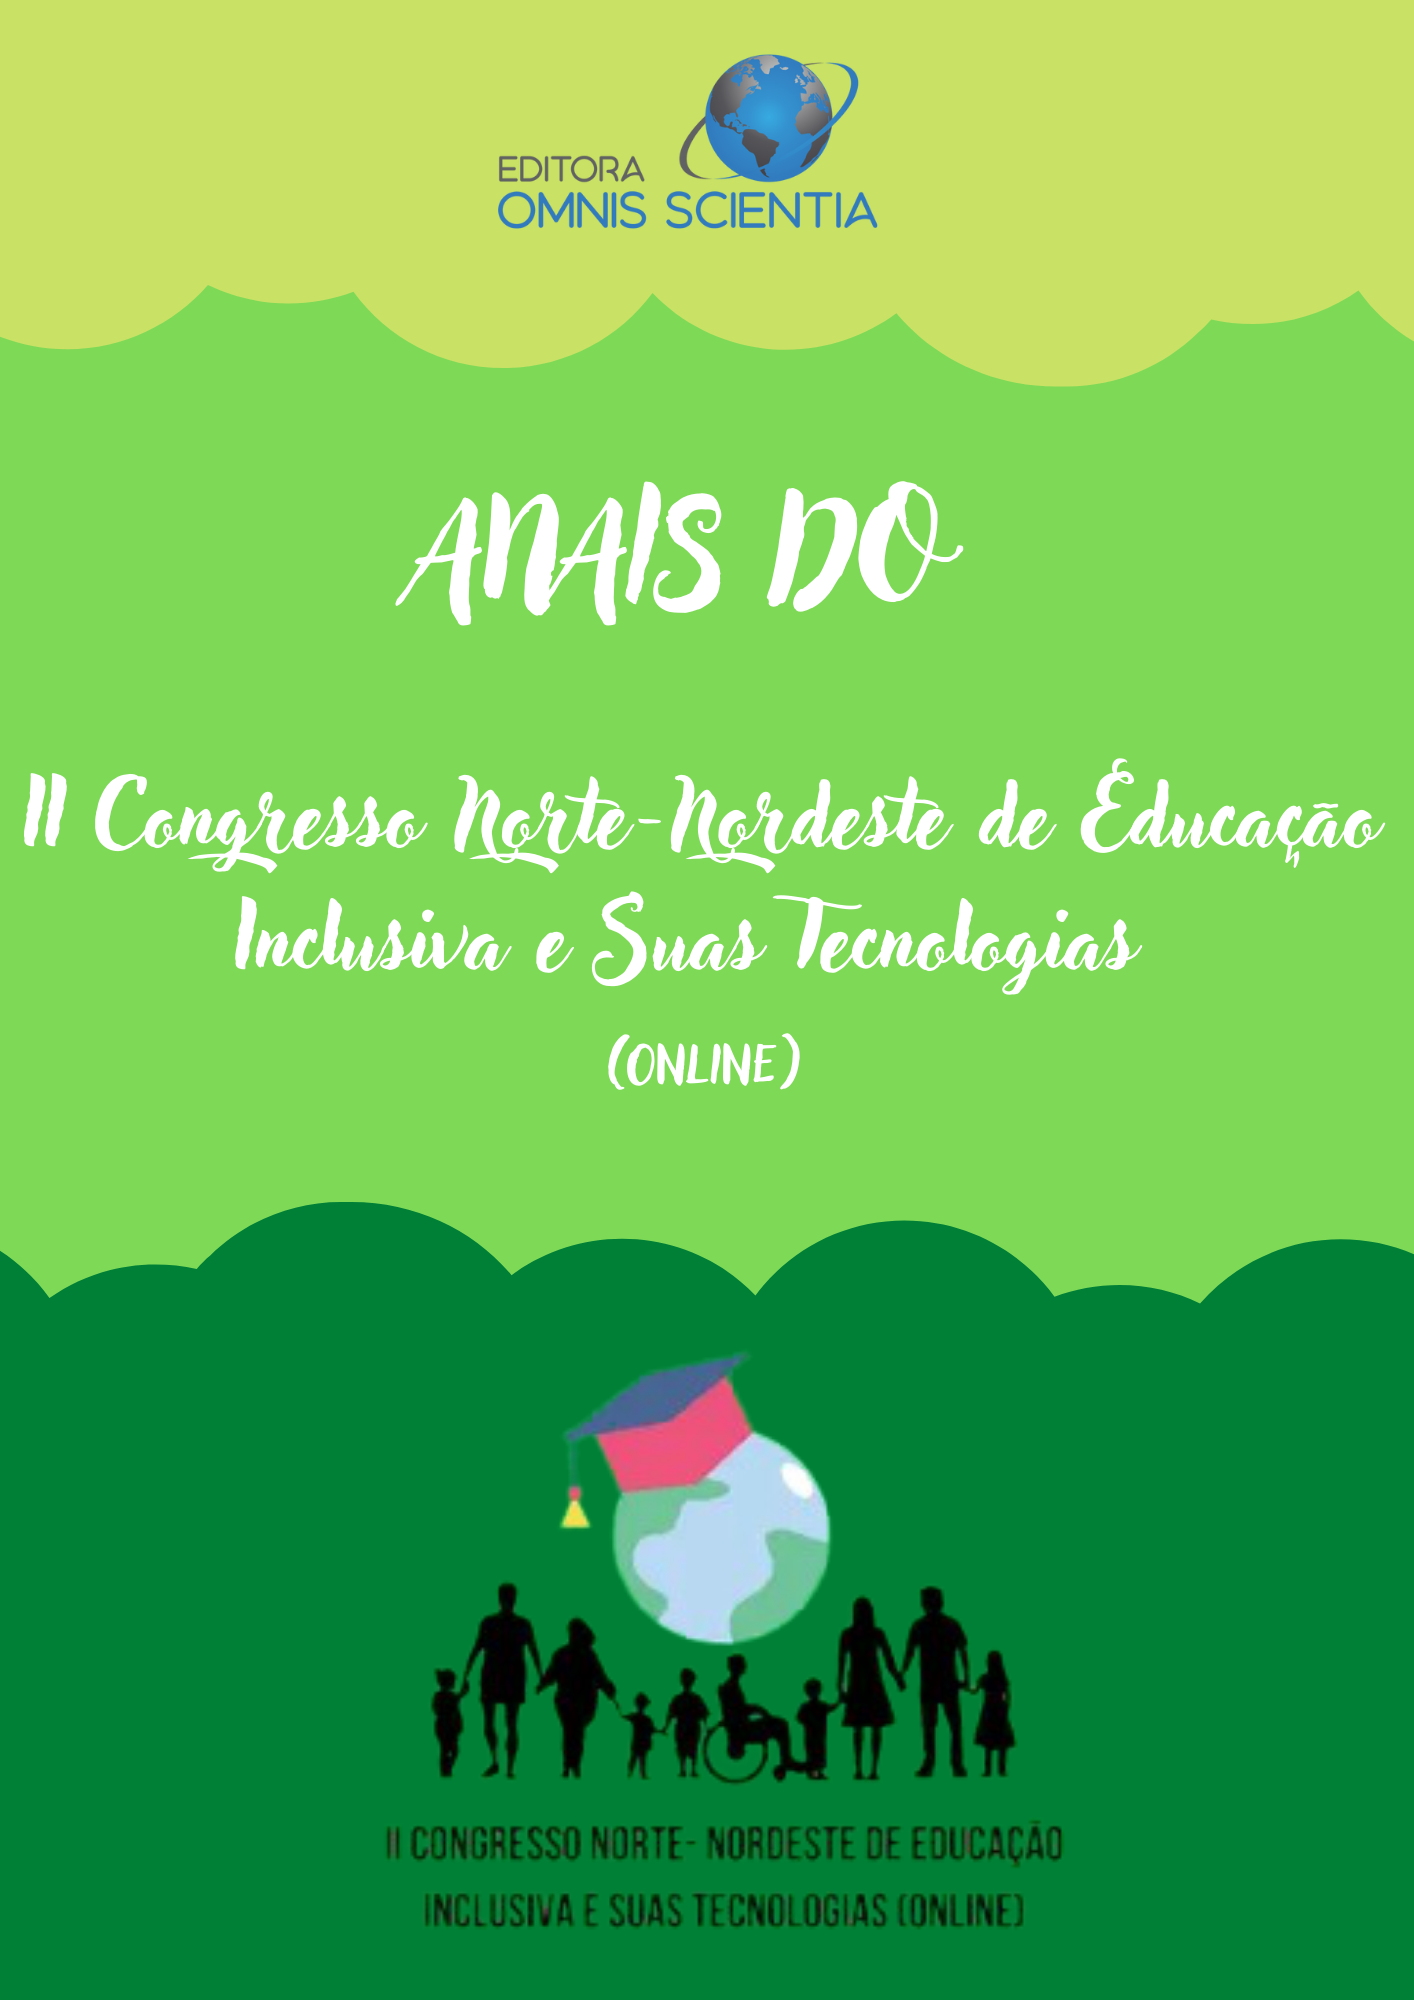 ANAIS DO II CONGRESSO NORTE-NORDESTE DE EDUCAÇÃO INCLUSIVA E SUAS TECNOLOGIAS (ONLINE)